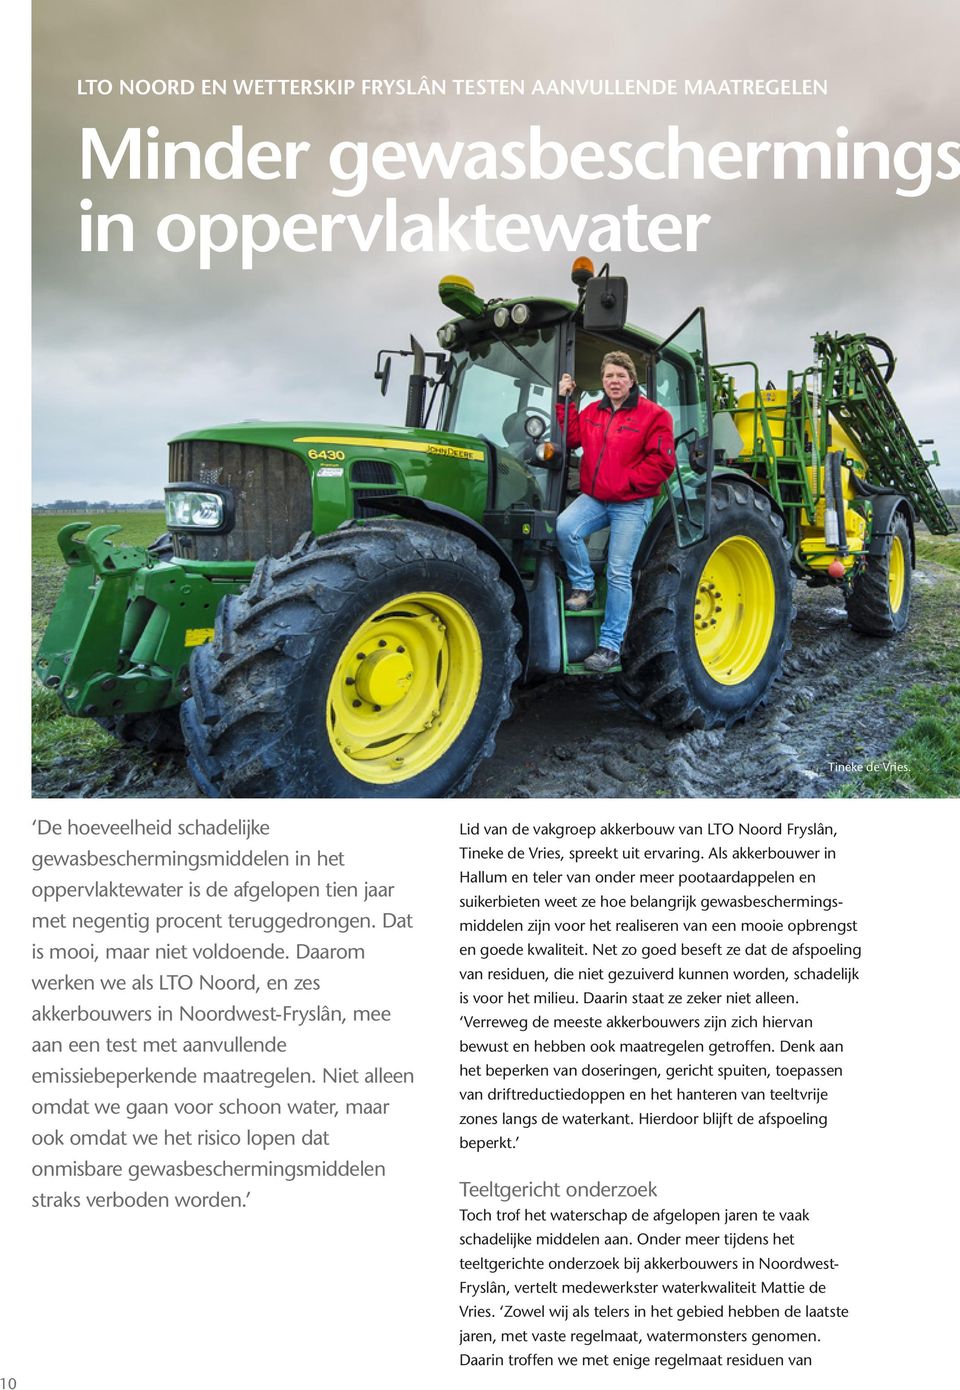 Daarom werken we als LTO Noord, en zes akkerbouwers in Noordwest-Fryslân, mee aan een test met aanvullende emissiebeperkende maatregelen.